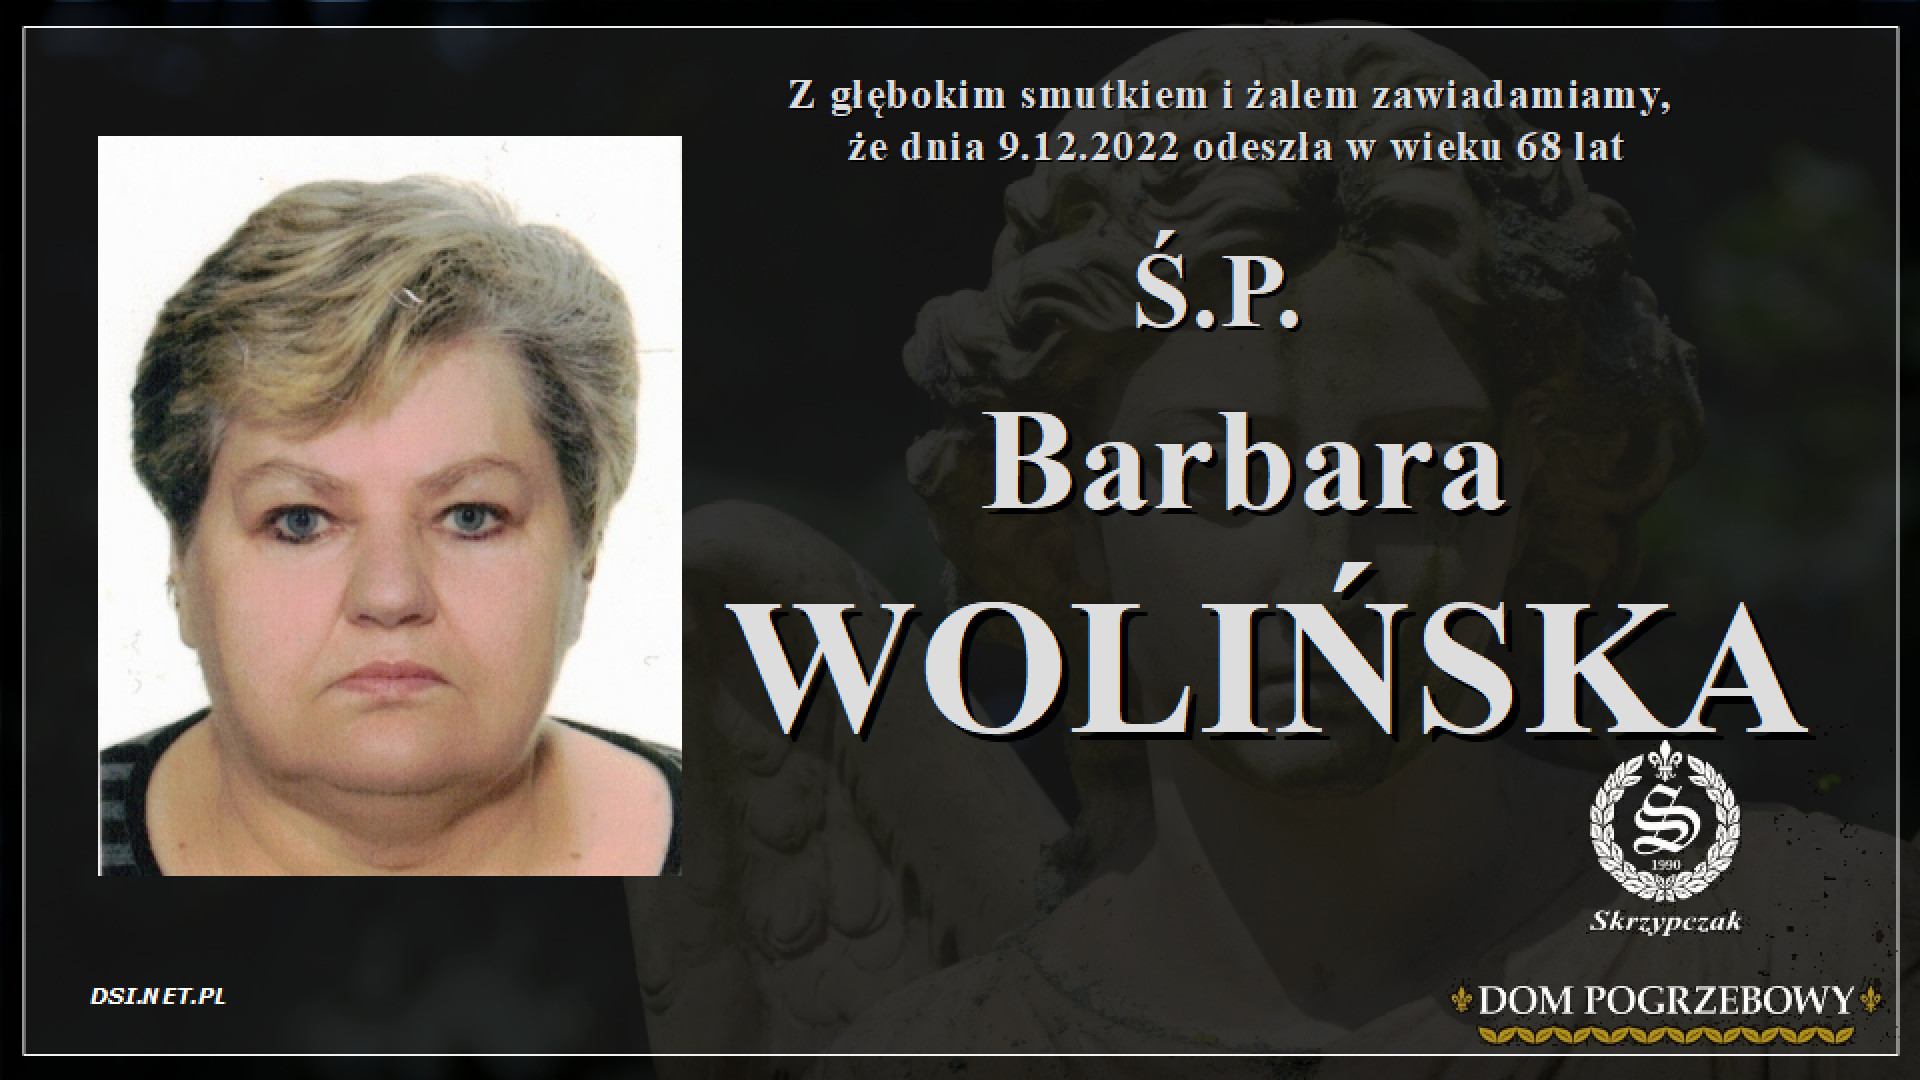 Ś.P. Barbara Wolińska